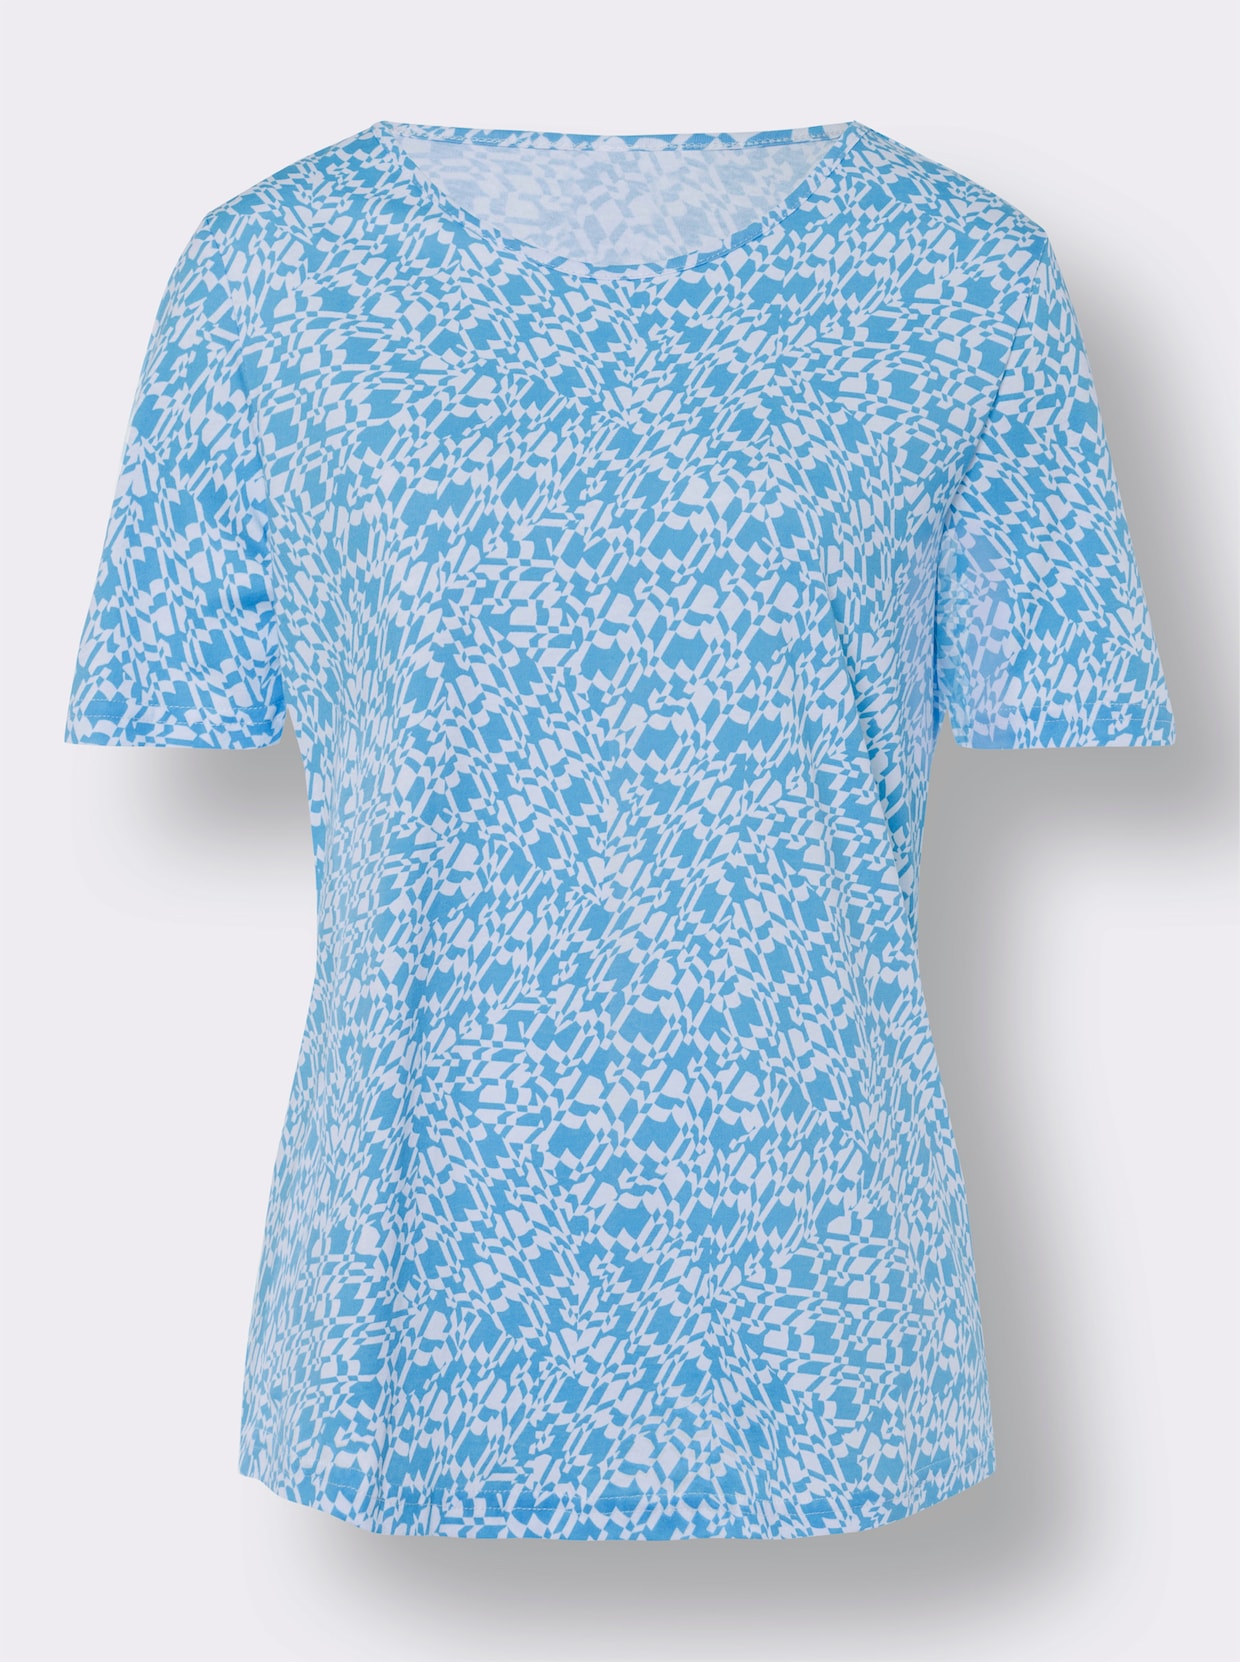 Voľnočasové tričko - modro-biela potlač